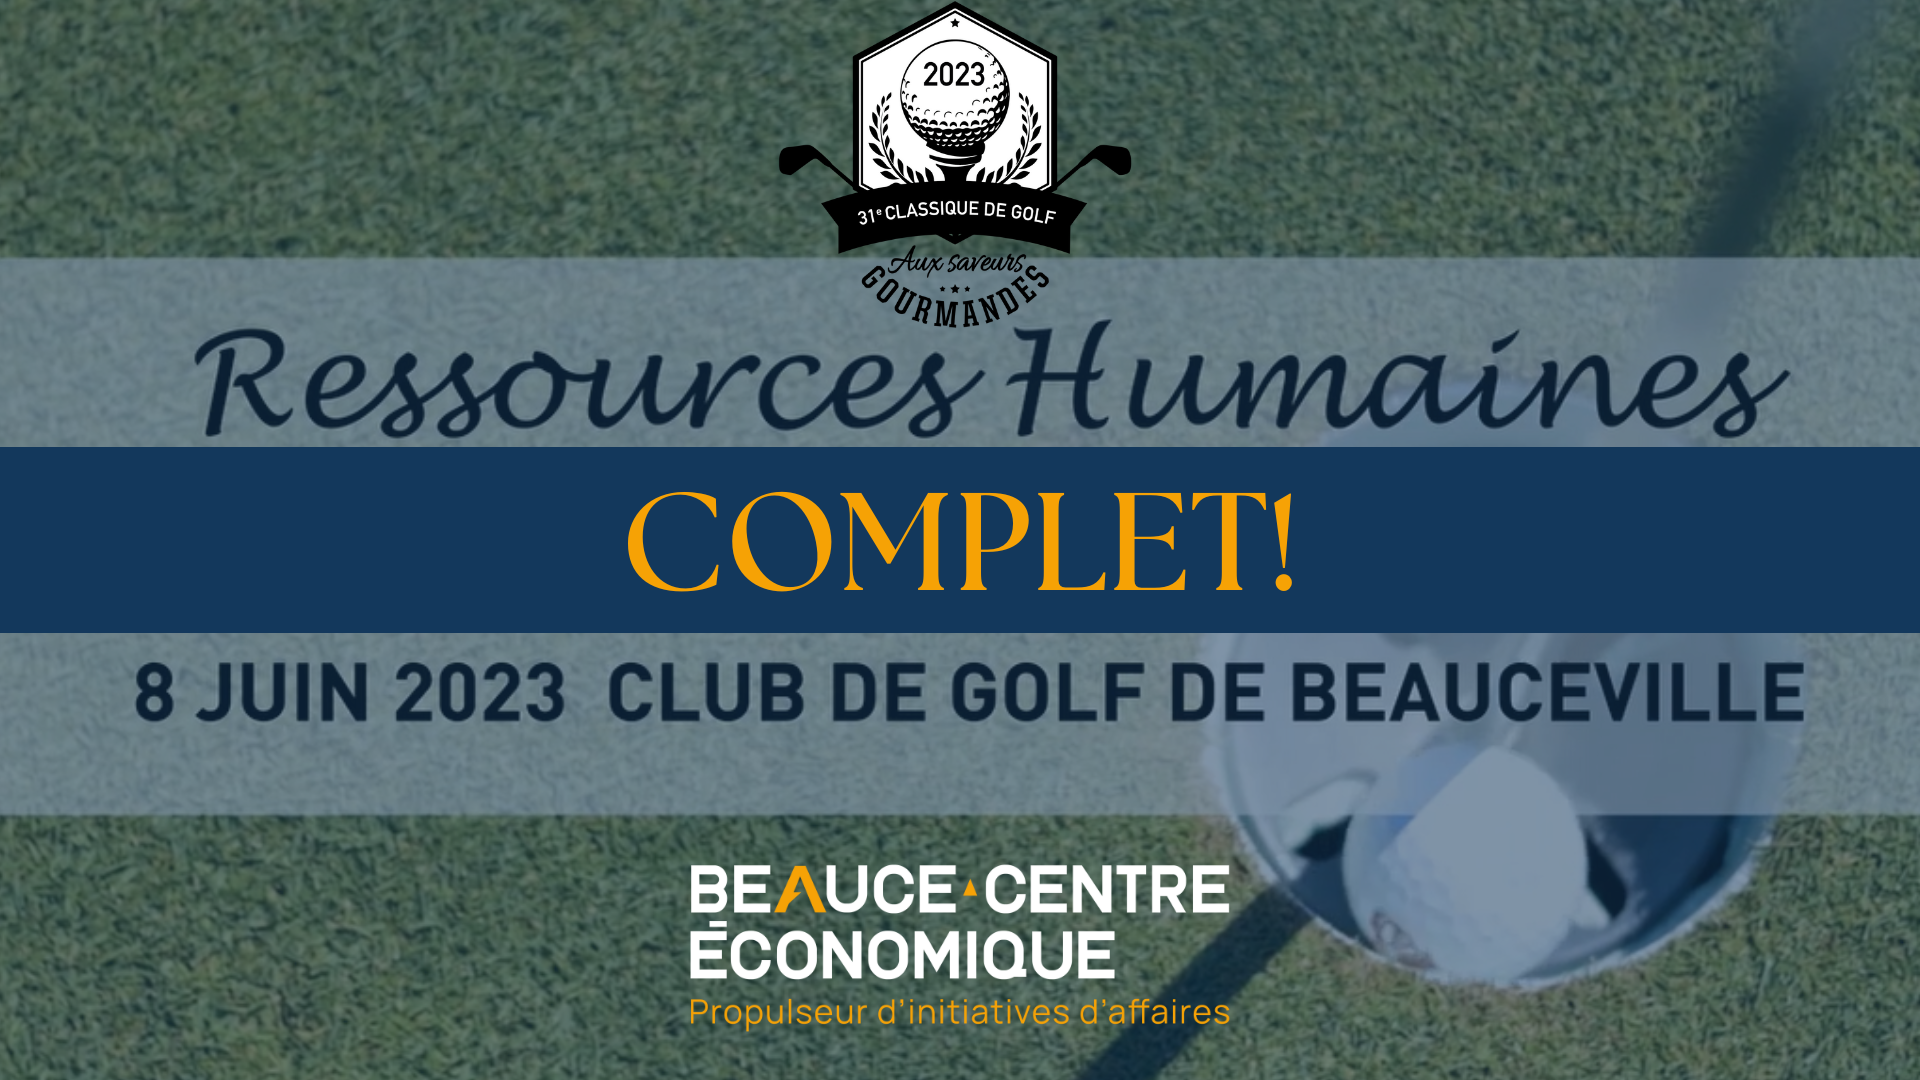 31e Classique de golf - Édition spéciale : Ressources humaines